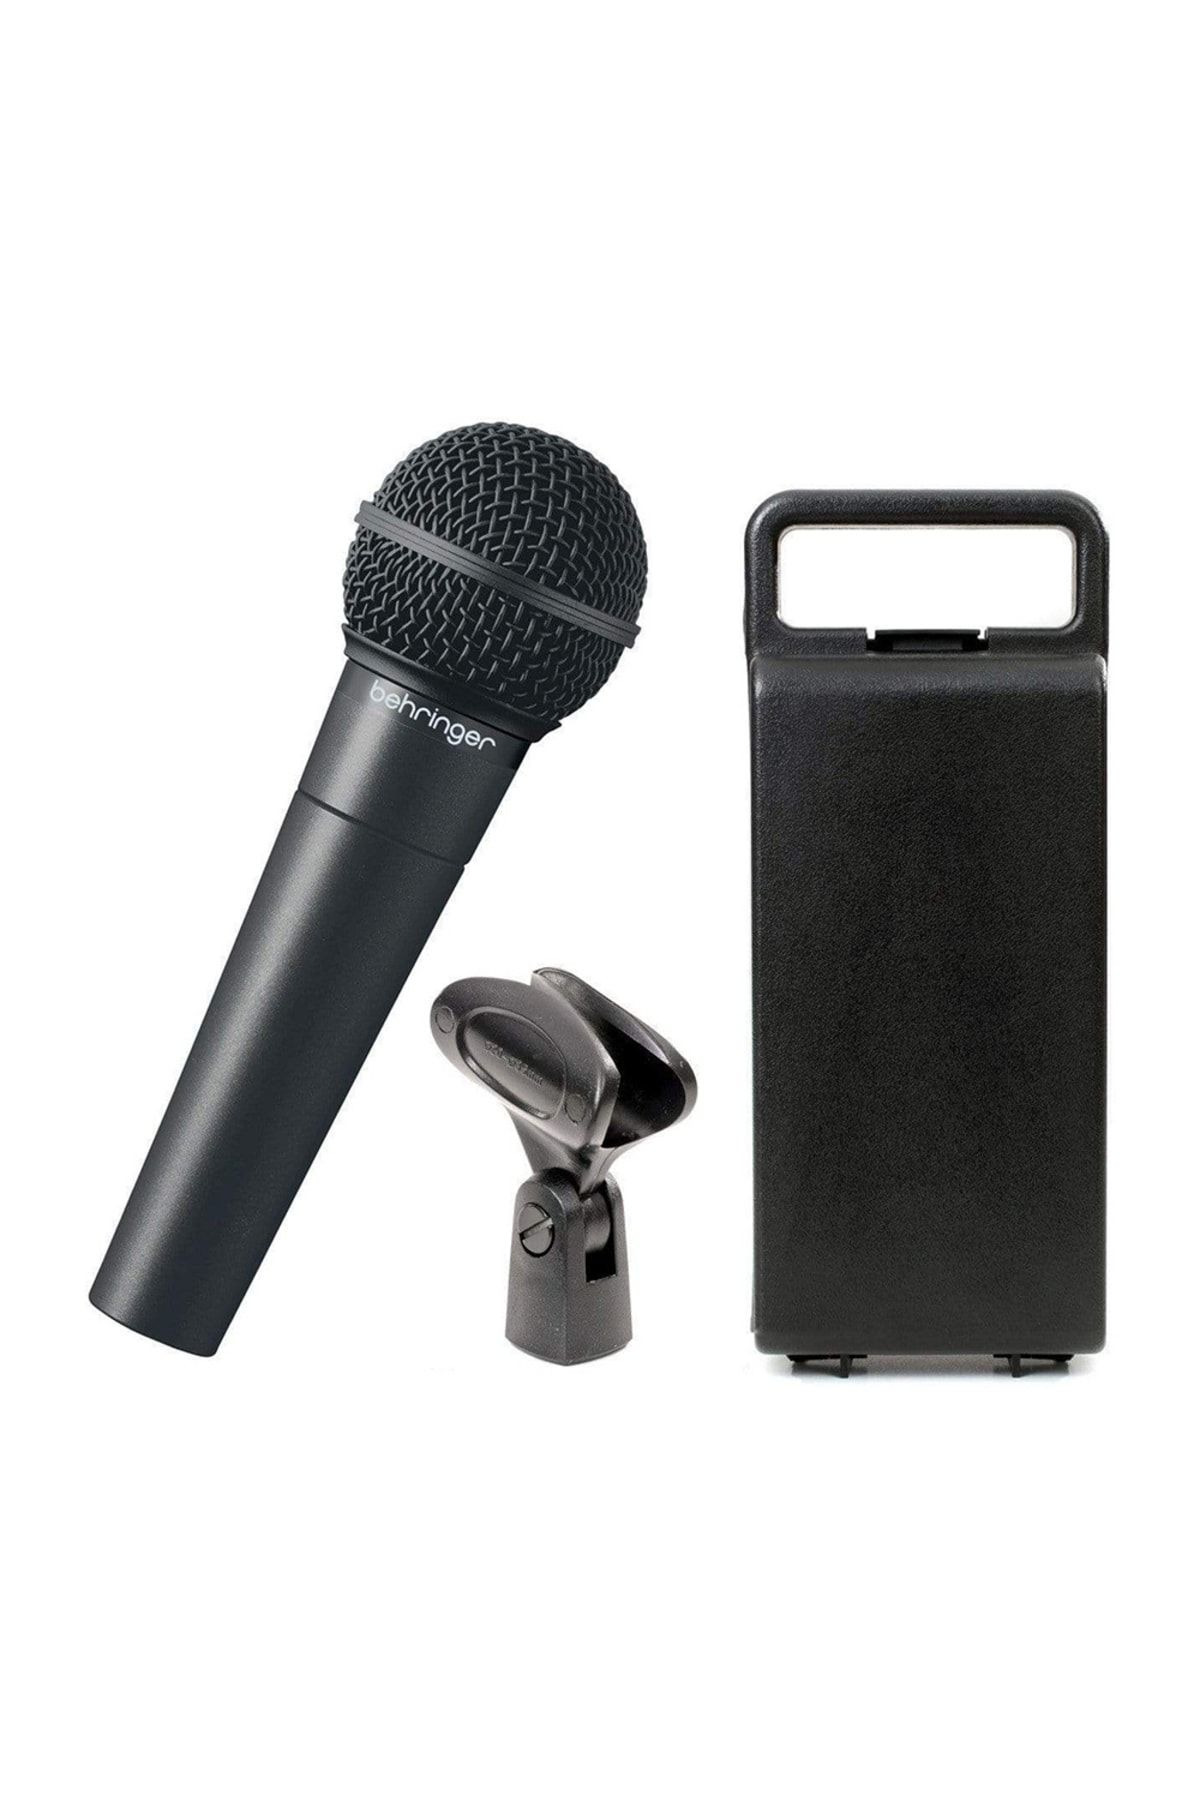 Behringer Ultravoıce Xm8500 Dinamik Mikrofon